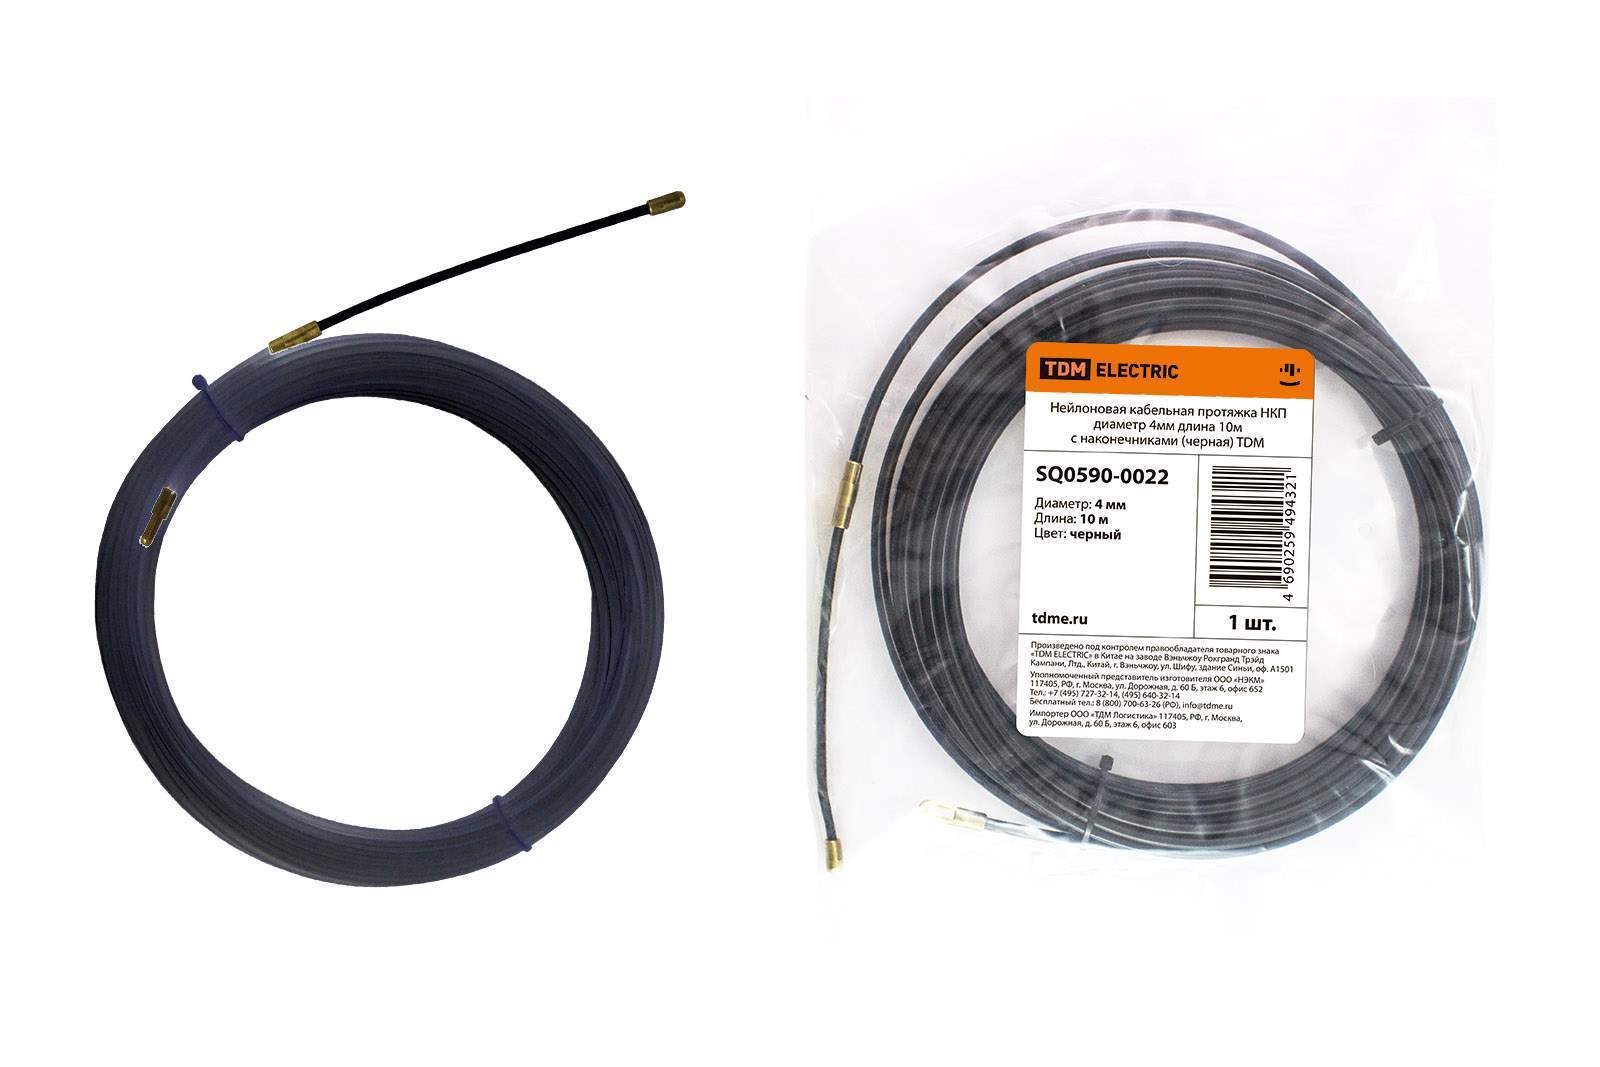 нейлоновая кабельная протяжка нкп диаметр 4мм длина 10м с наконечниками (черная) tdm от BTSprom.by